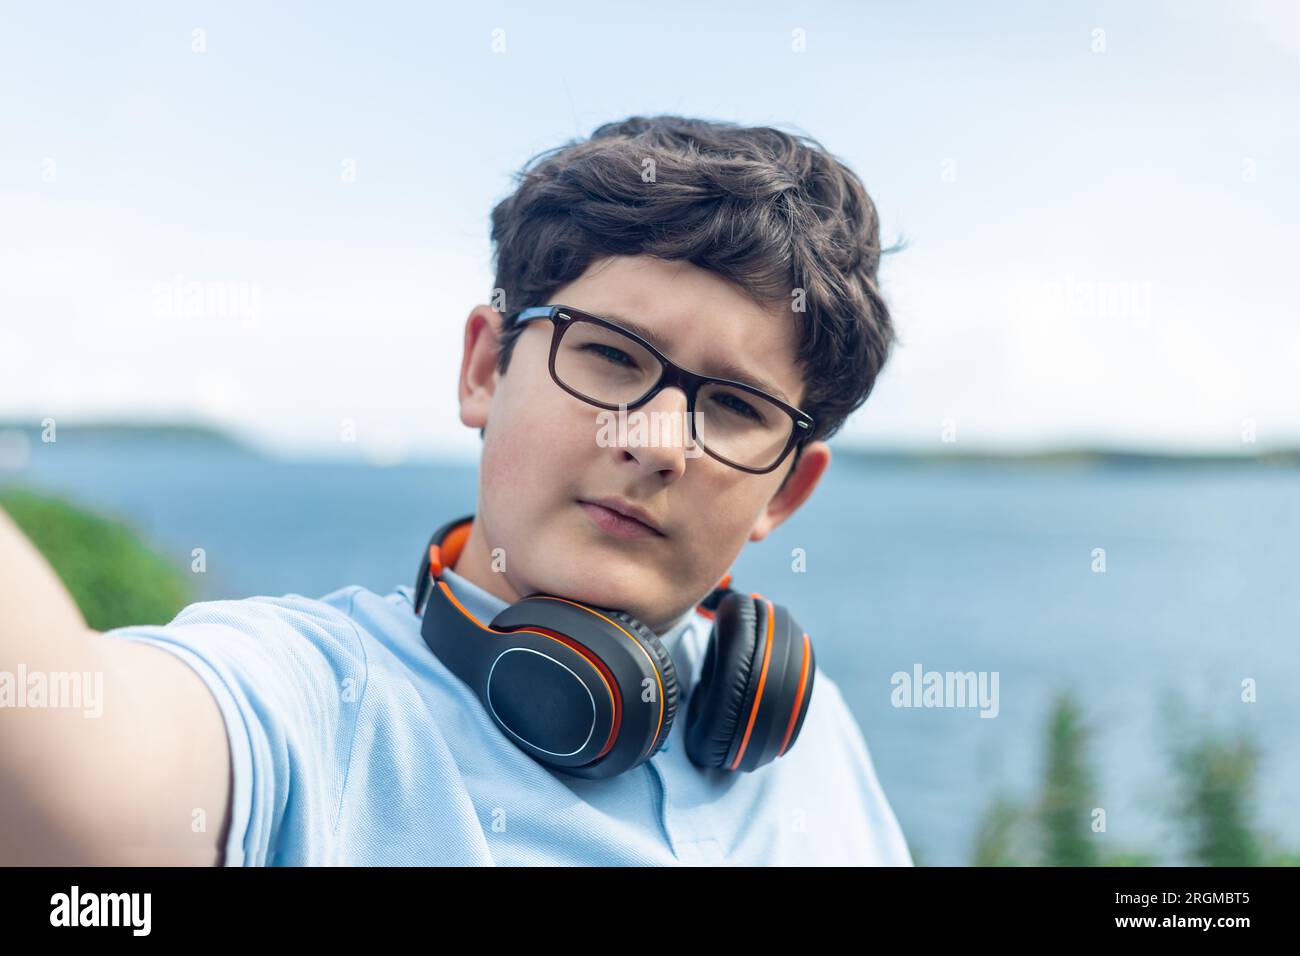 Porträt eines 11-jährigen Jungen mit Brille und kabellosen Kopfhörern, Selfie, Meer im Hintergrund Stockfoto